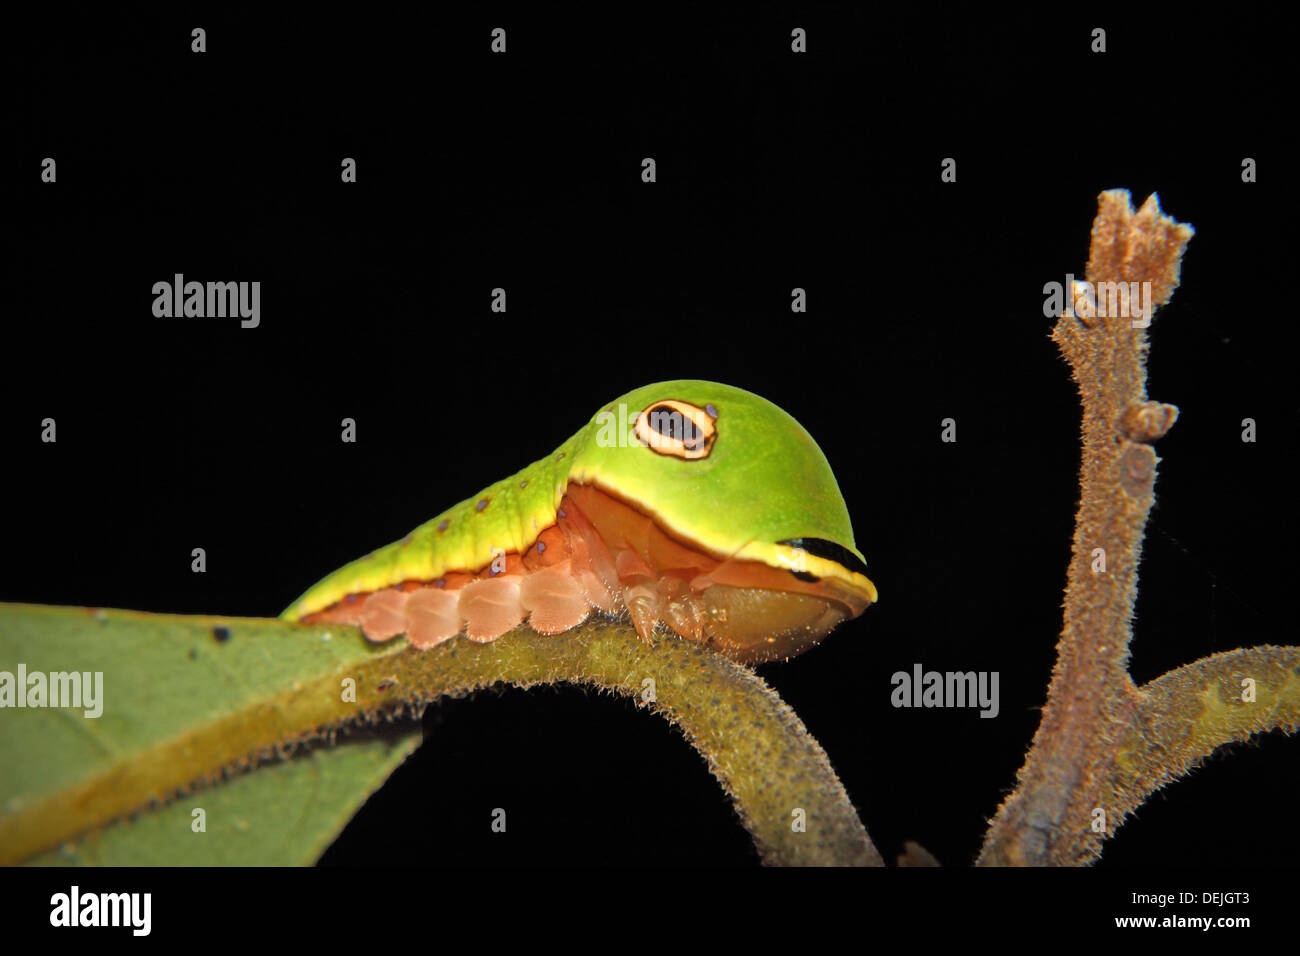 Eine Spicebush Schwalbenschwanz-Raupe imitiert eine grüne Schlange. Stockfoto